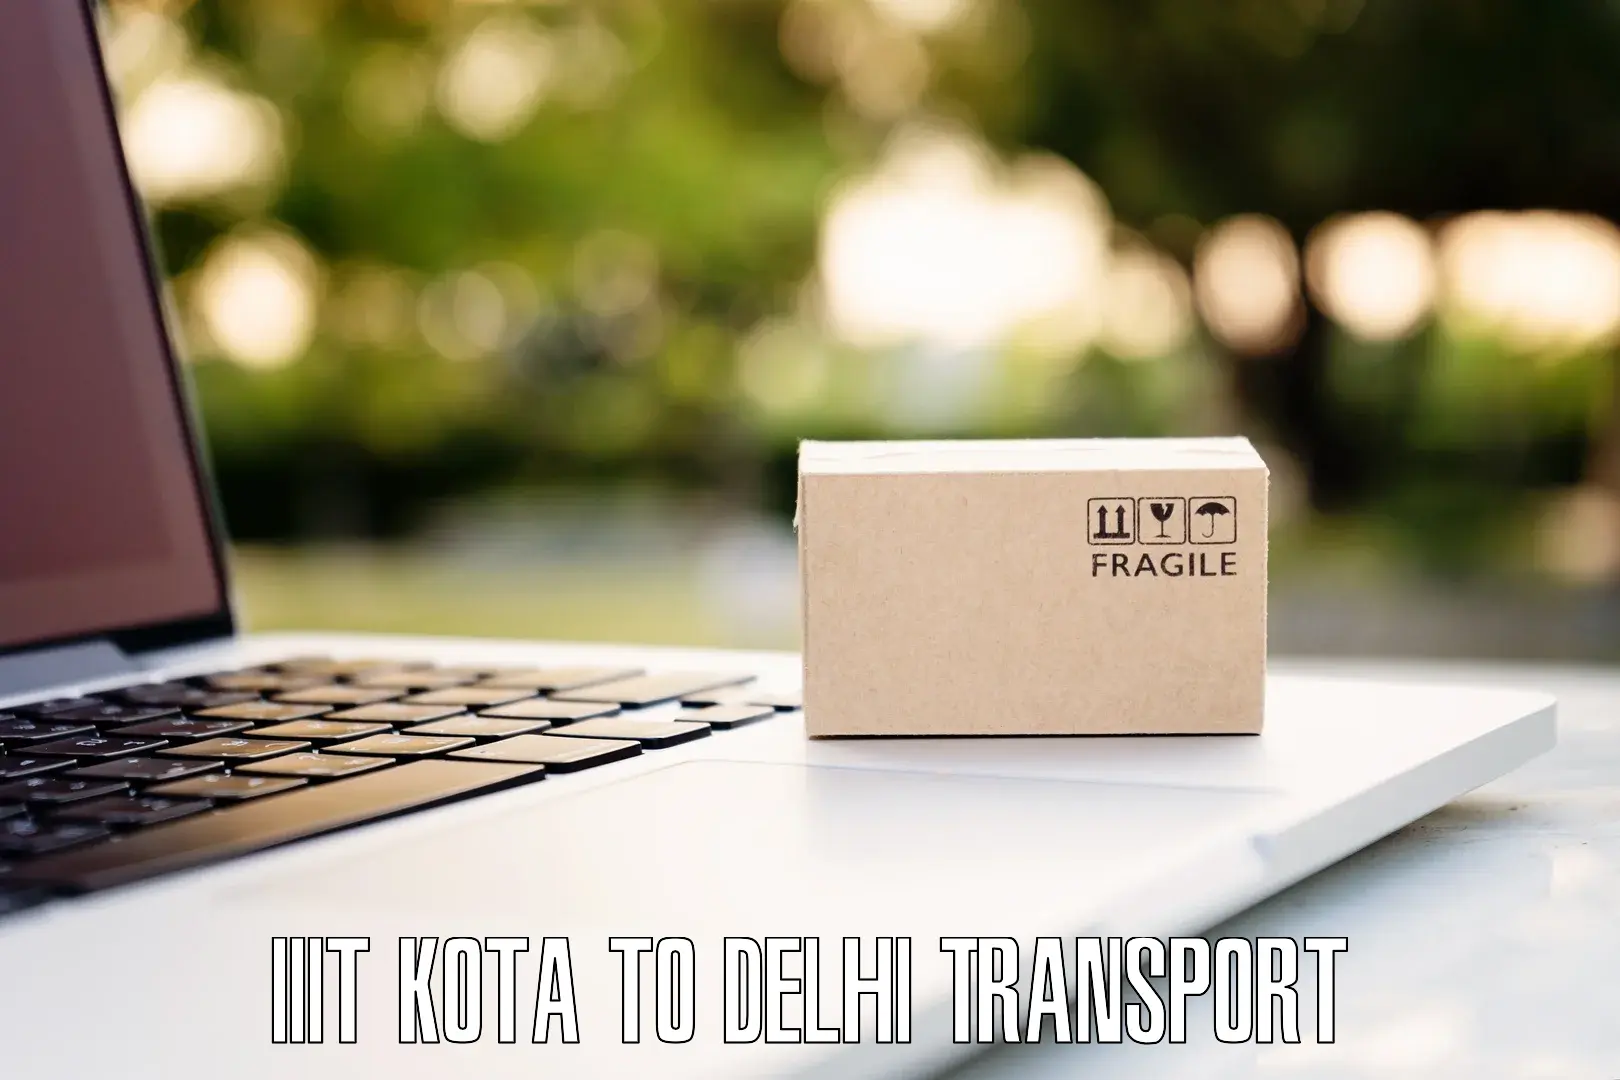 Intercity goods transport IIIT Kota to Sarojini Nagar